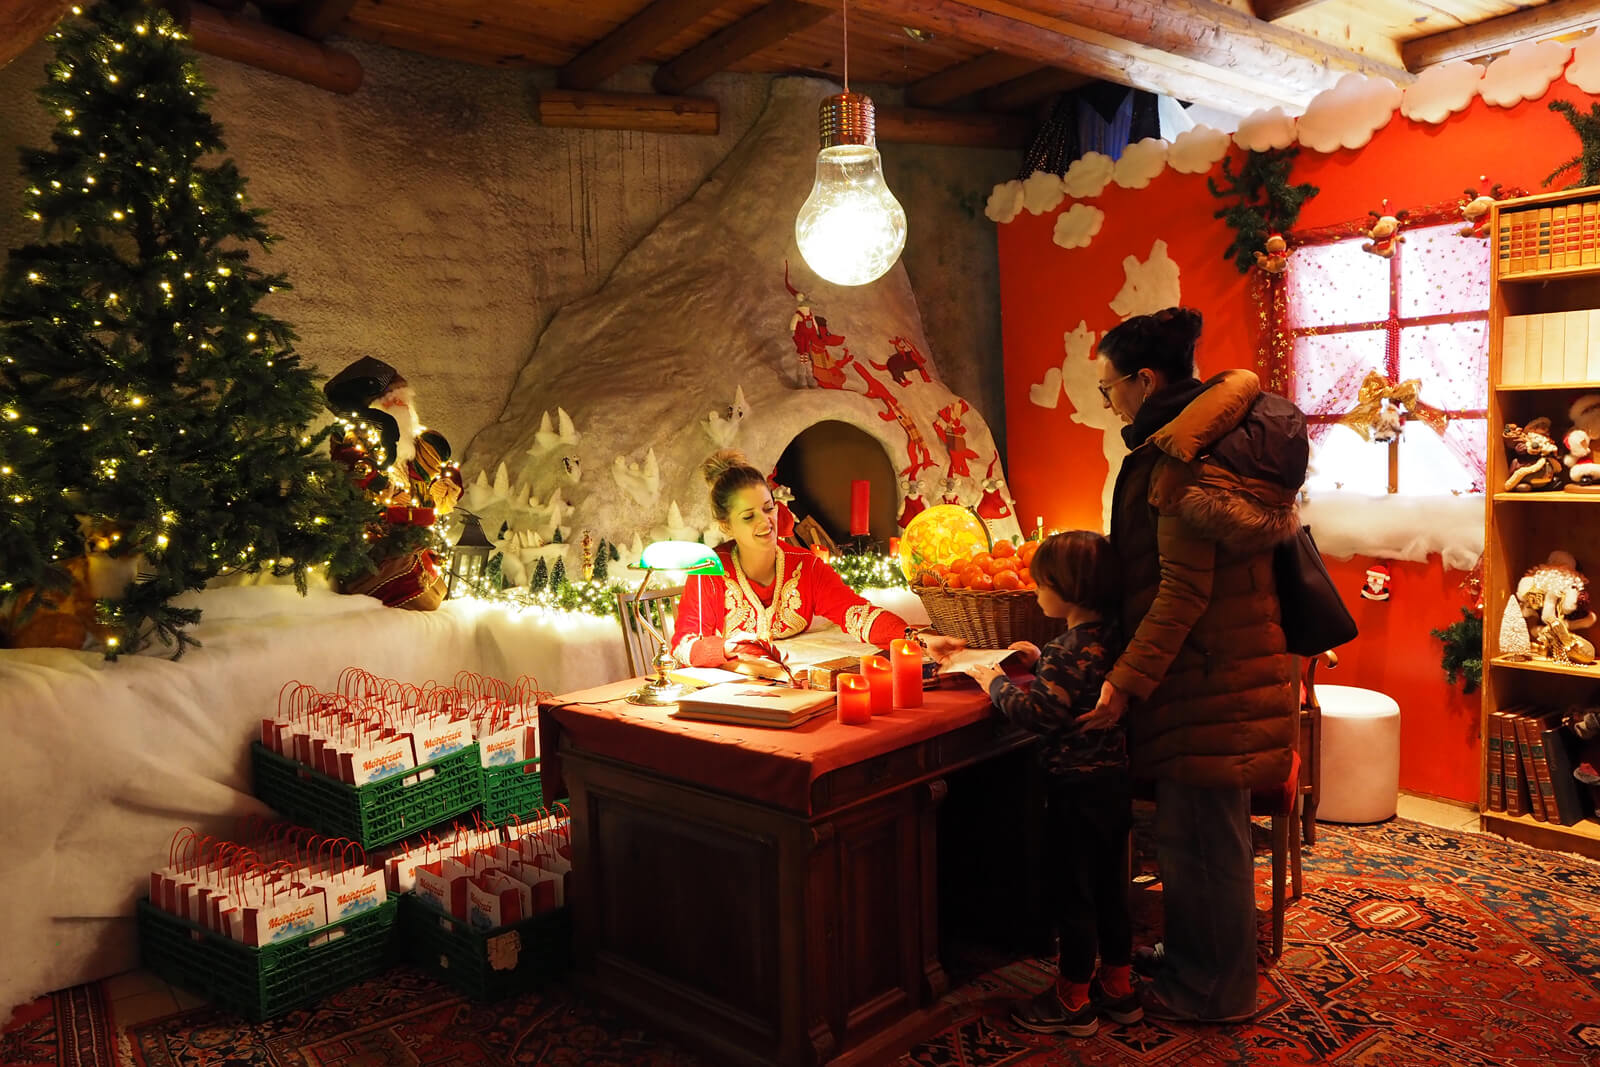 Rochers de Naye Santa House - Montreux Noël